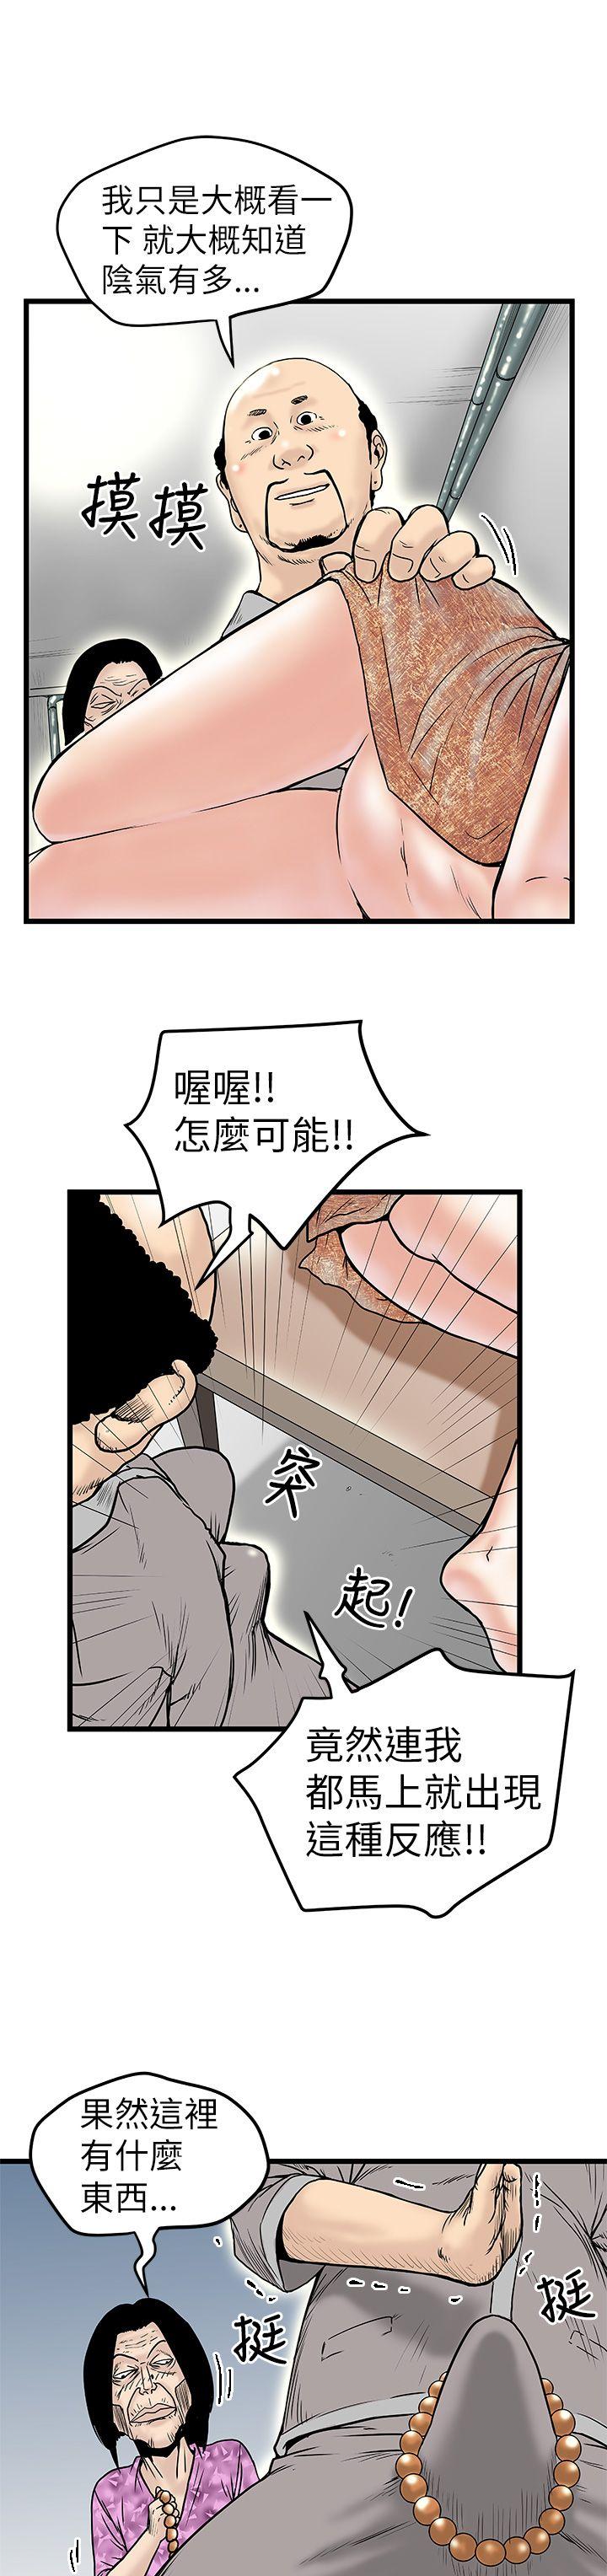 韩国污漫画 想像狂熱 第6话 13